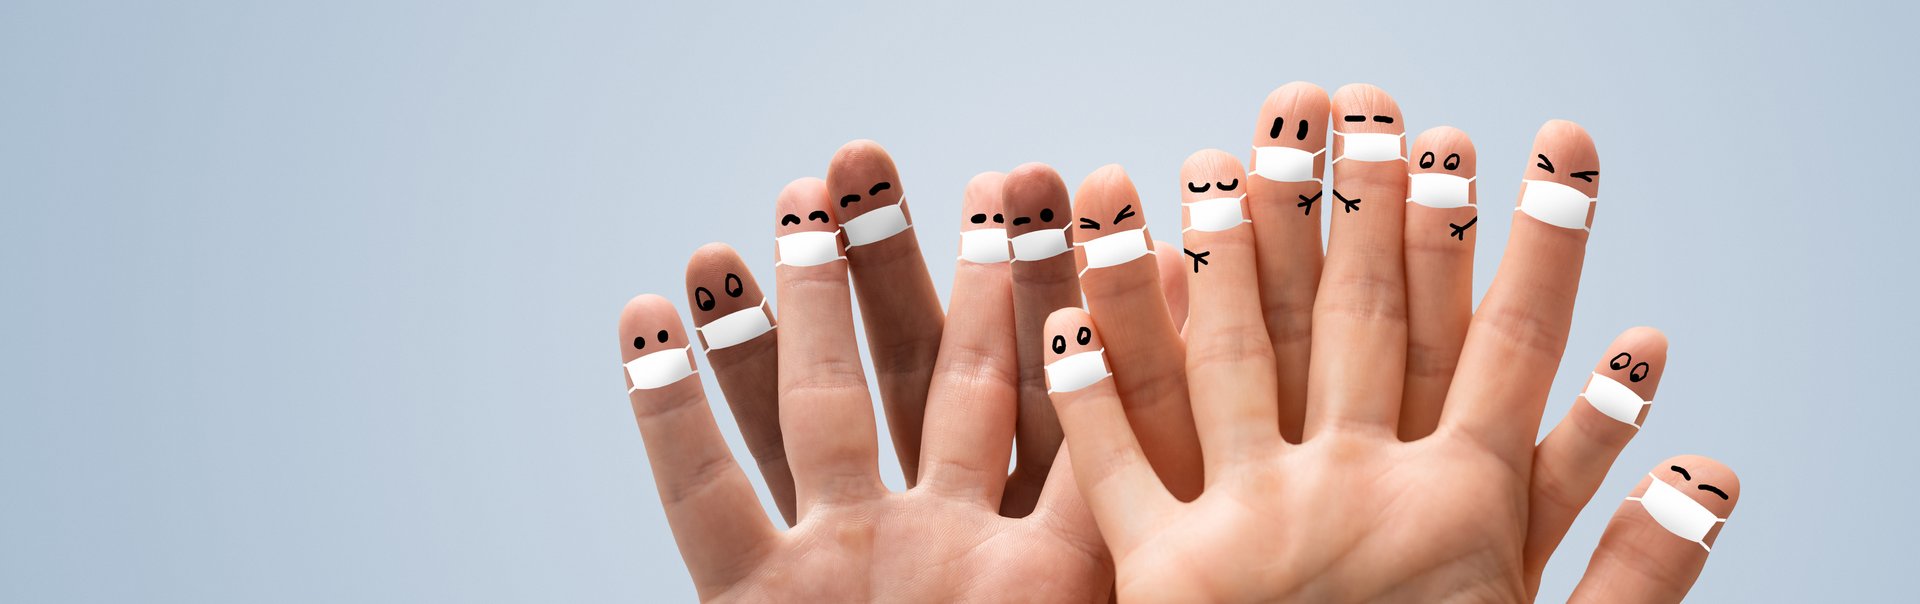 Viele Finger sind mit einem Munschutz und Augen bemalt.